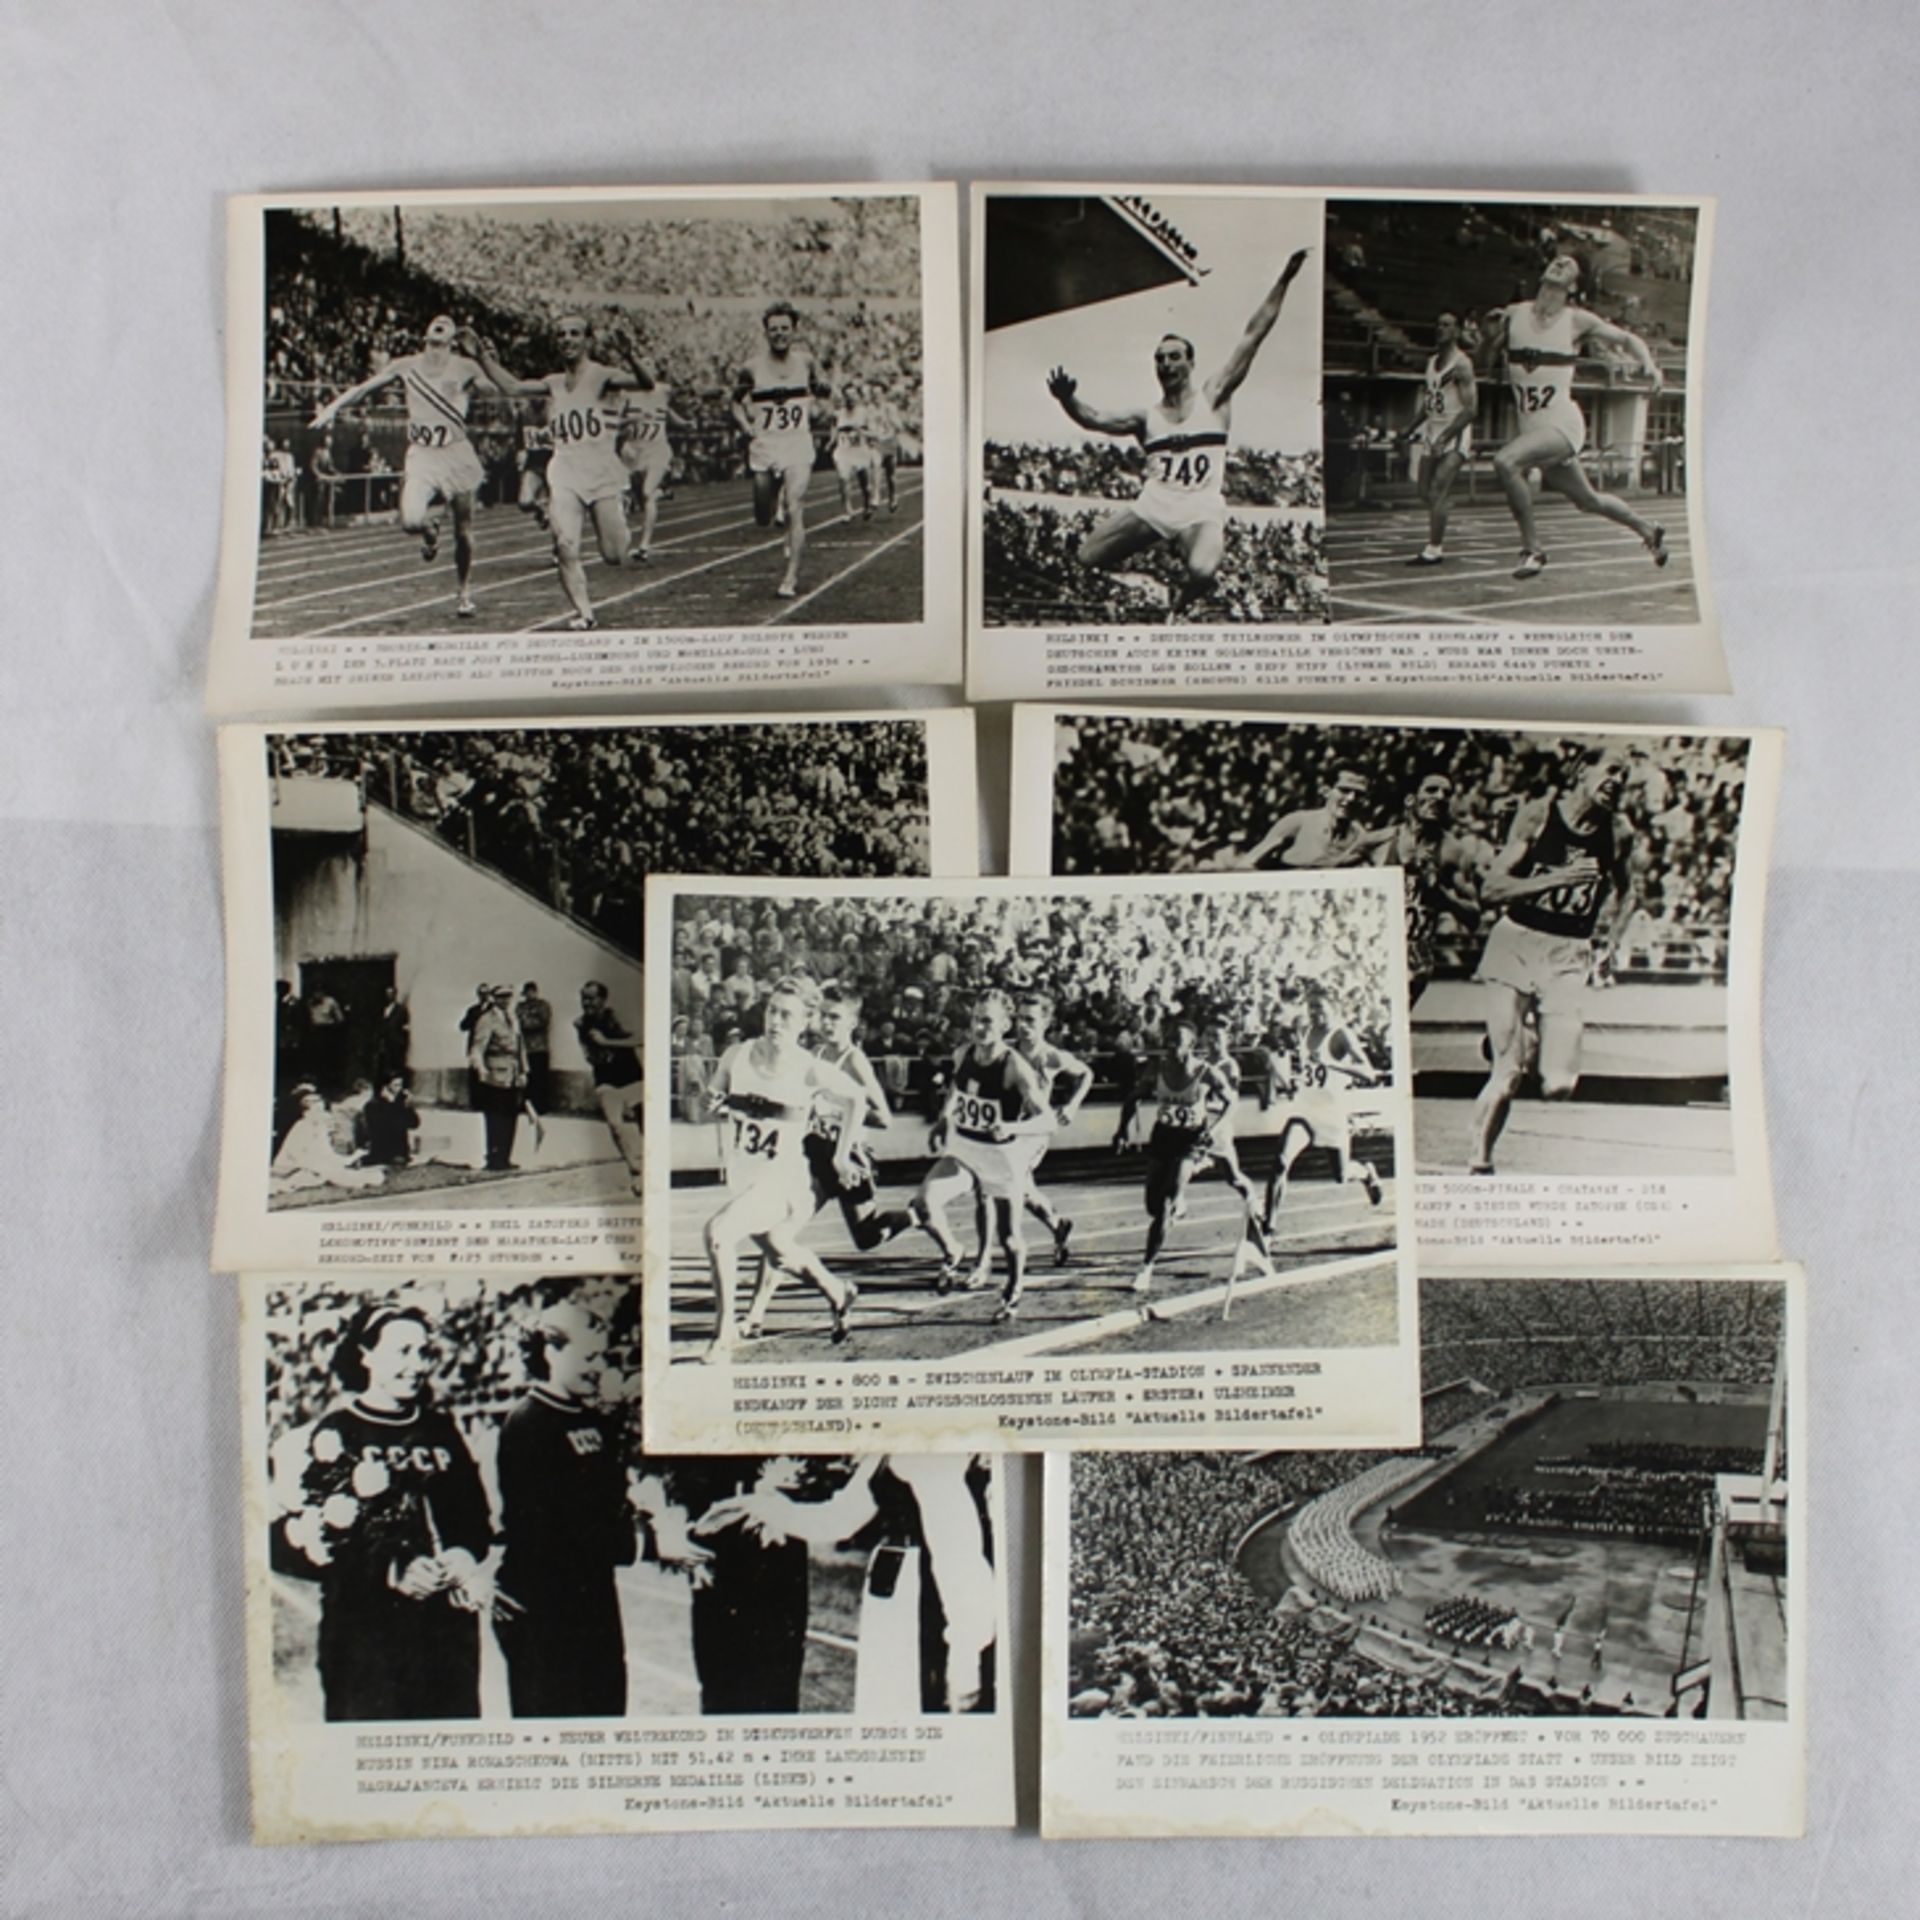 Helsinki Finnland Olympiade 1952 Pressefotos ca. 24 x 18 cm 7 St., tlw. fleckig am Rand